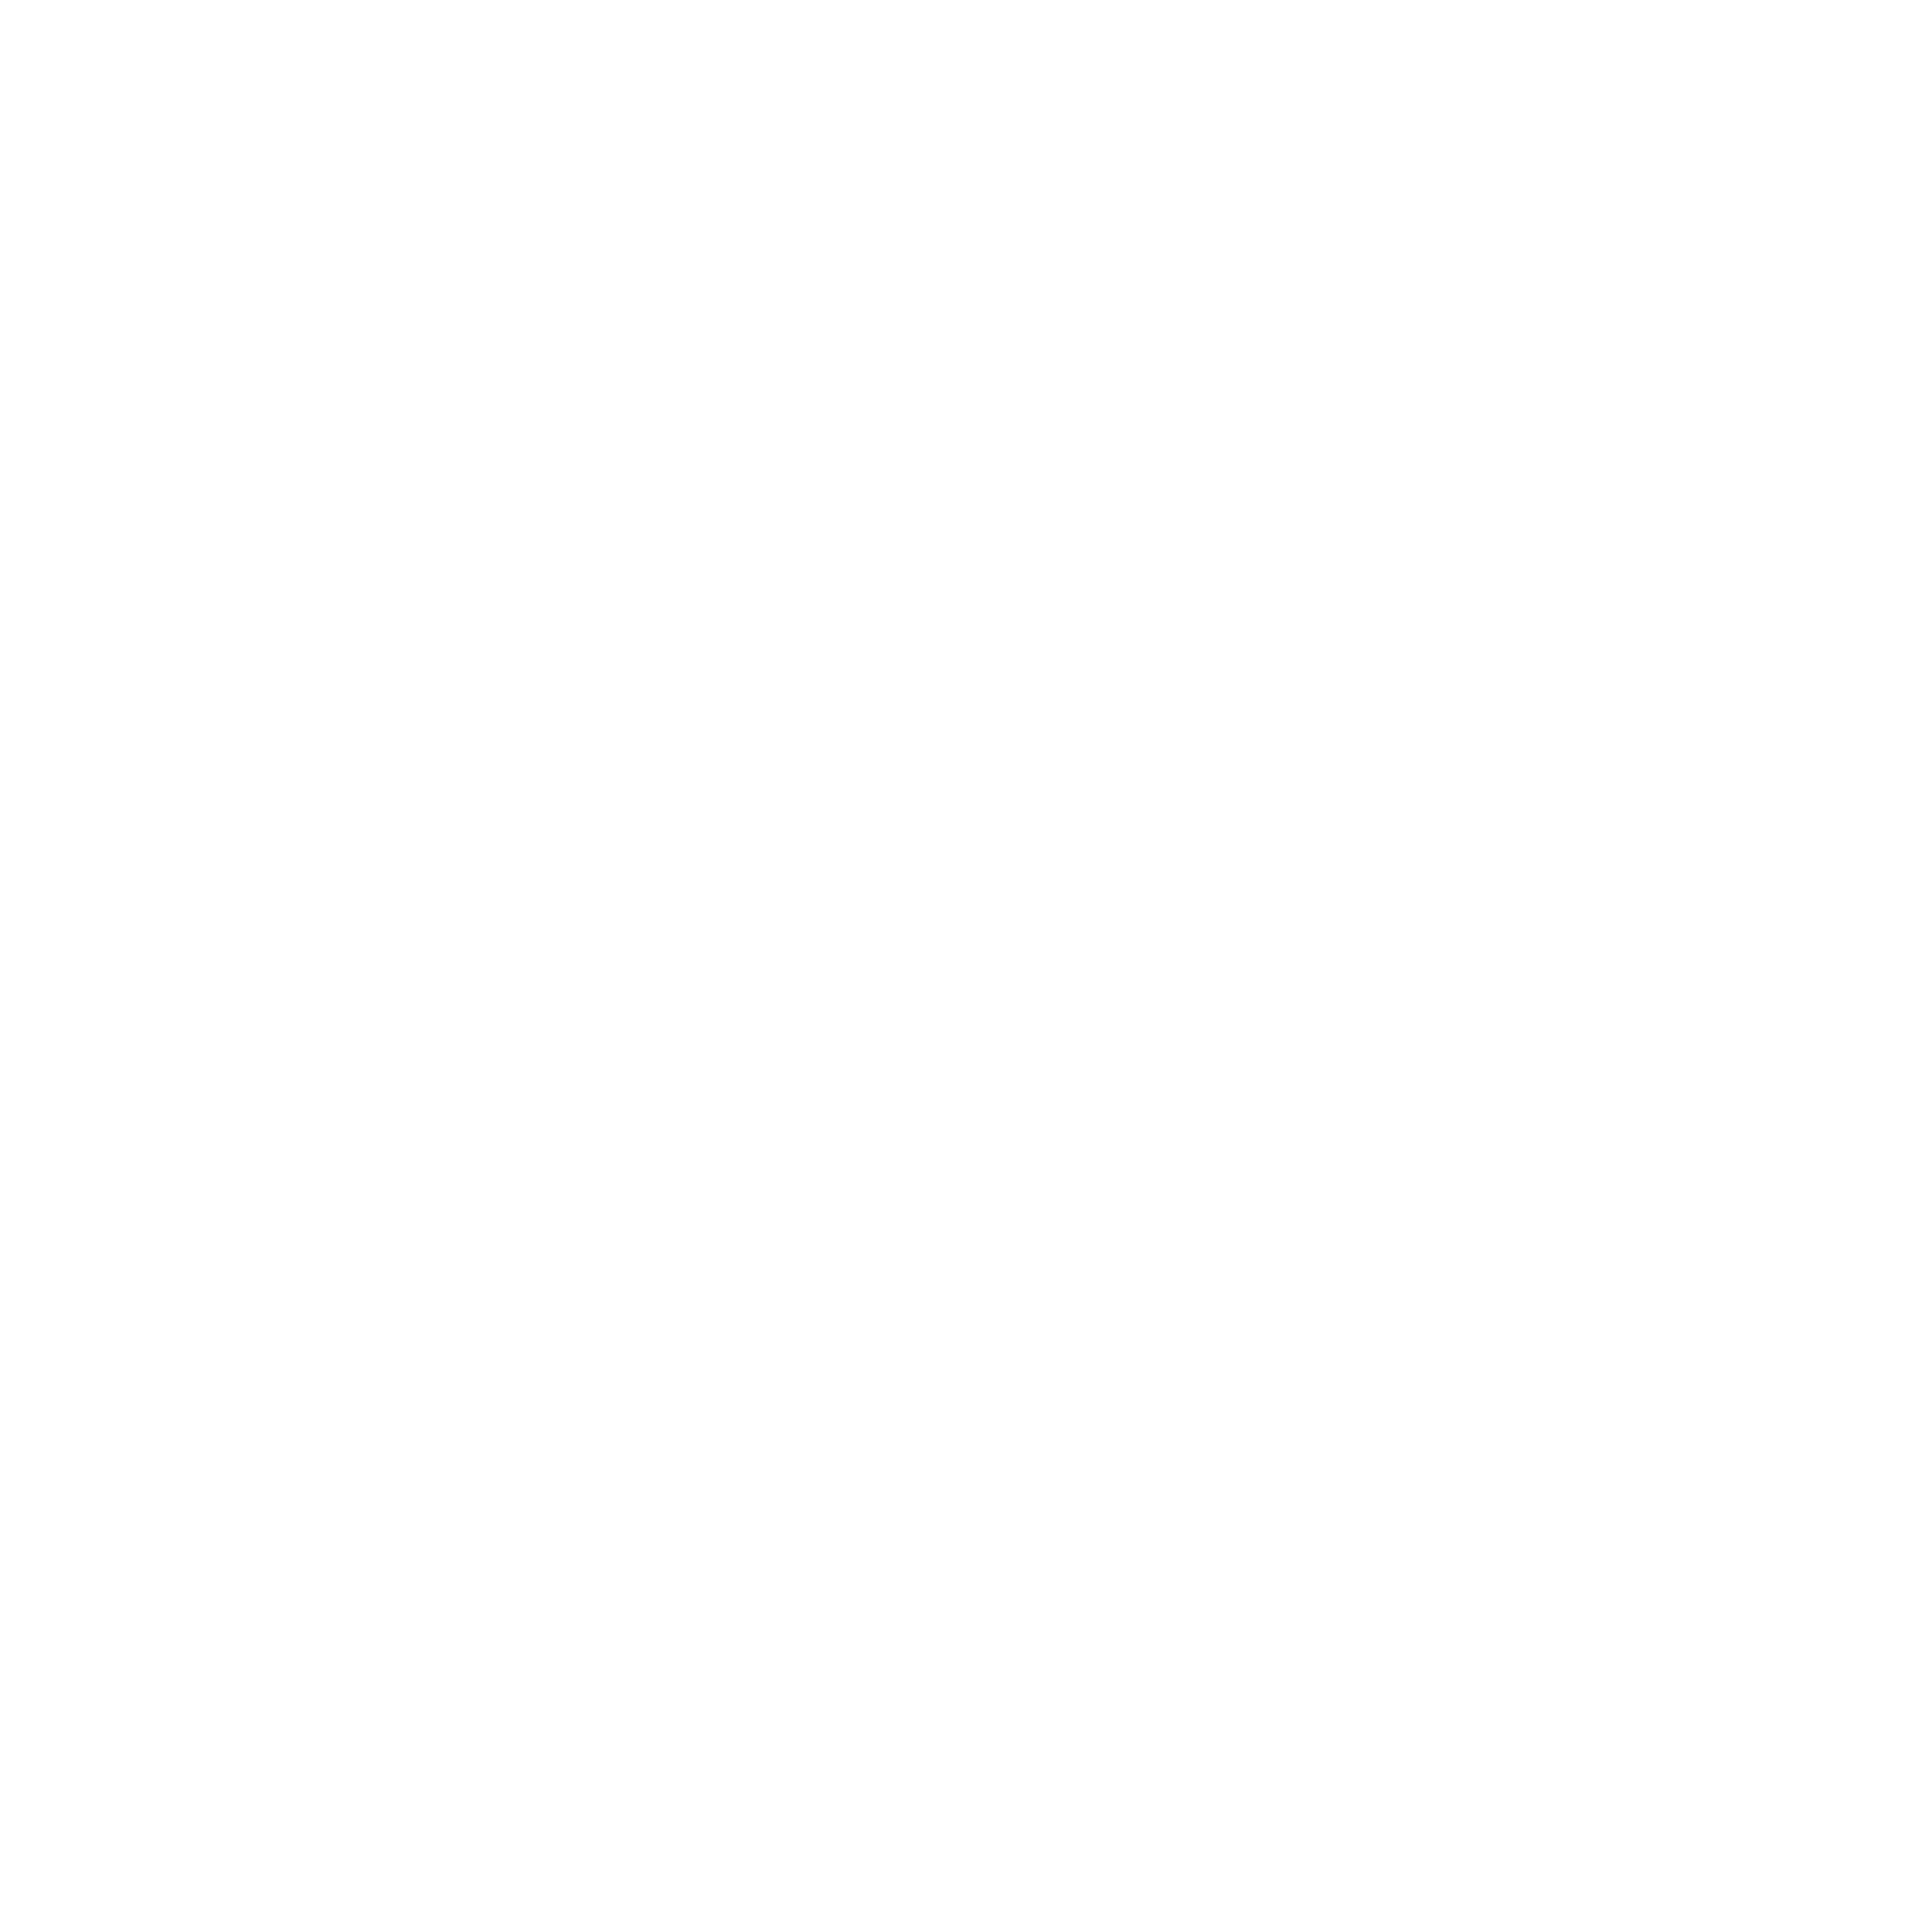 WeddingPlannerMagazine_KO.2500.png